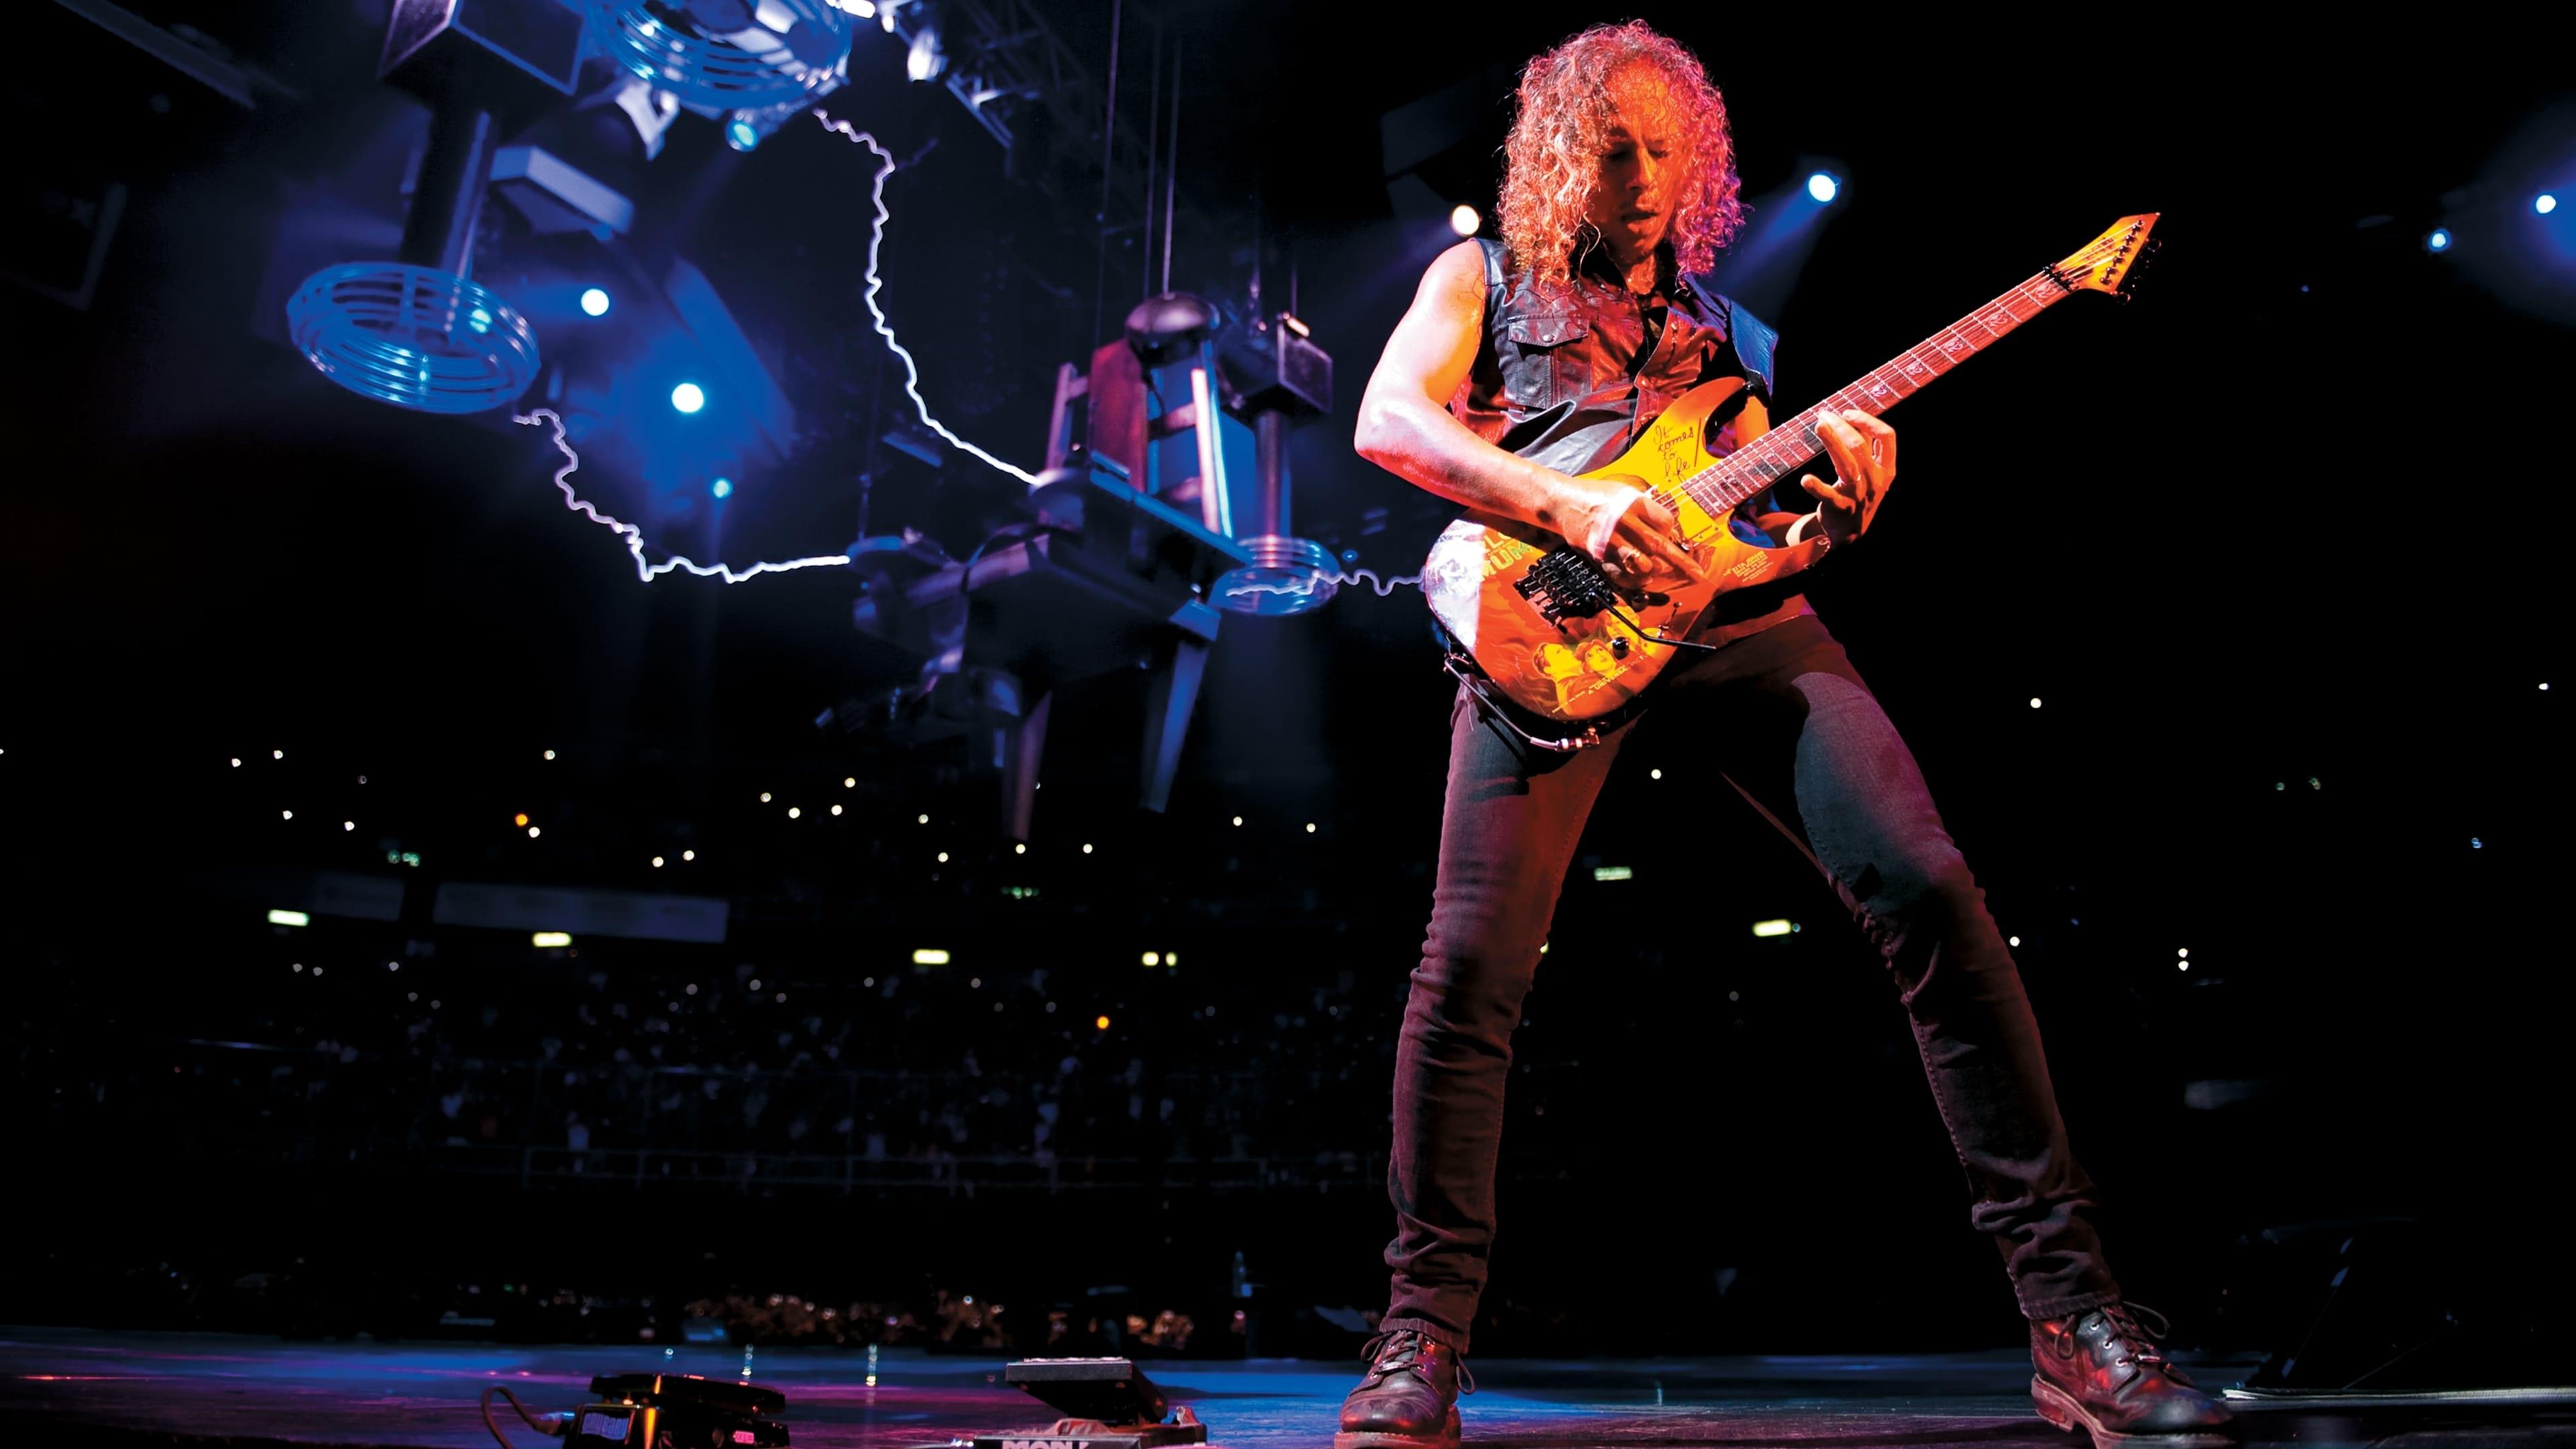 Metallica: Through the Never backdrop